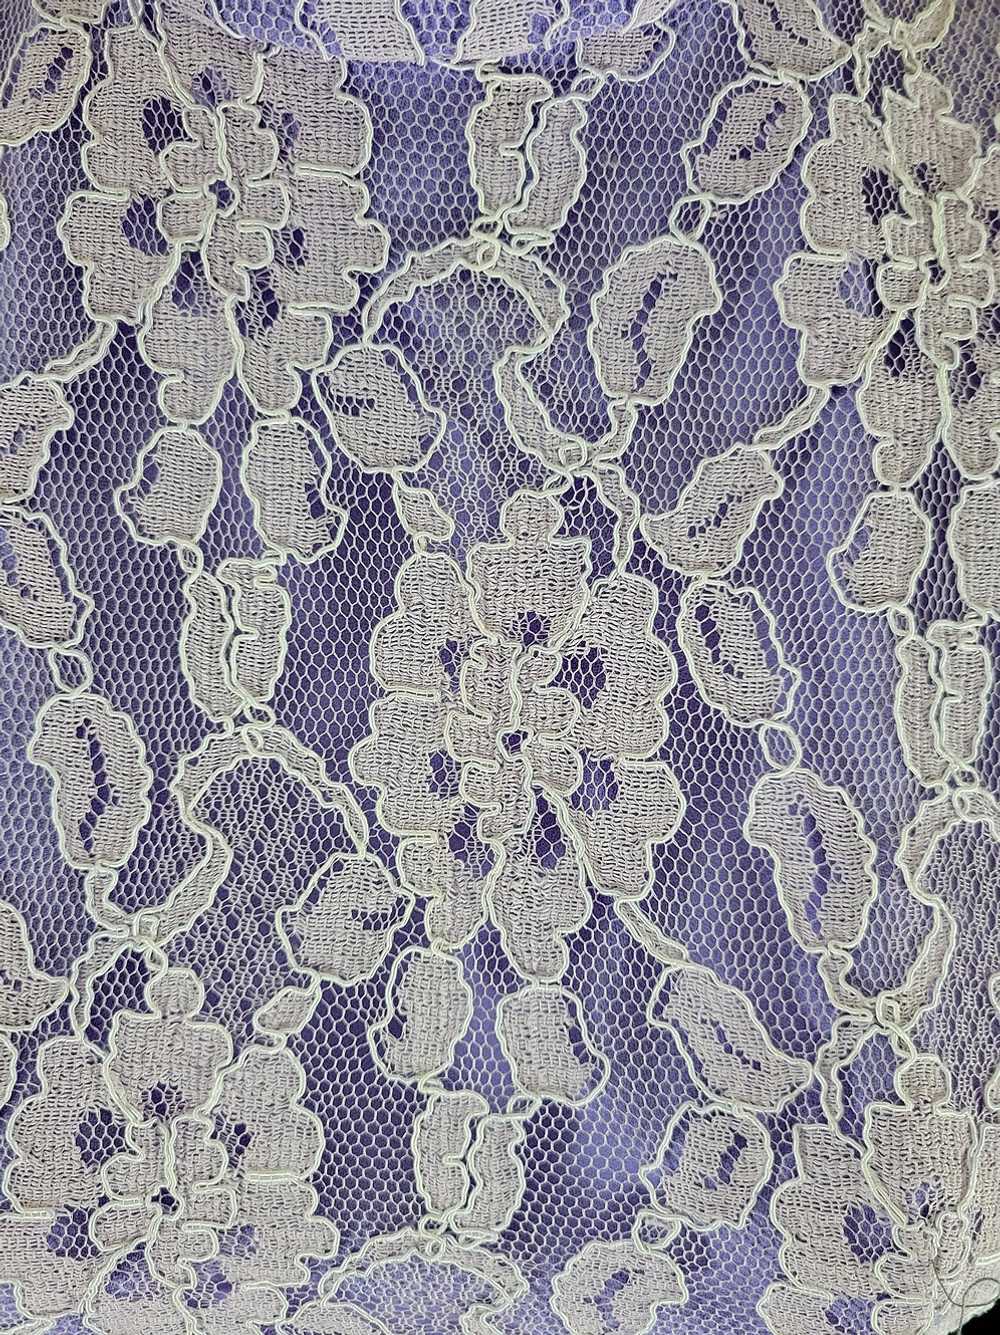 70s Lavender Empire Waist Lace Maxi Dress - image 4